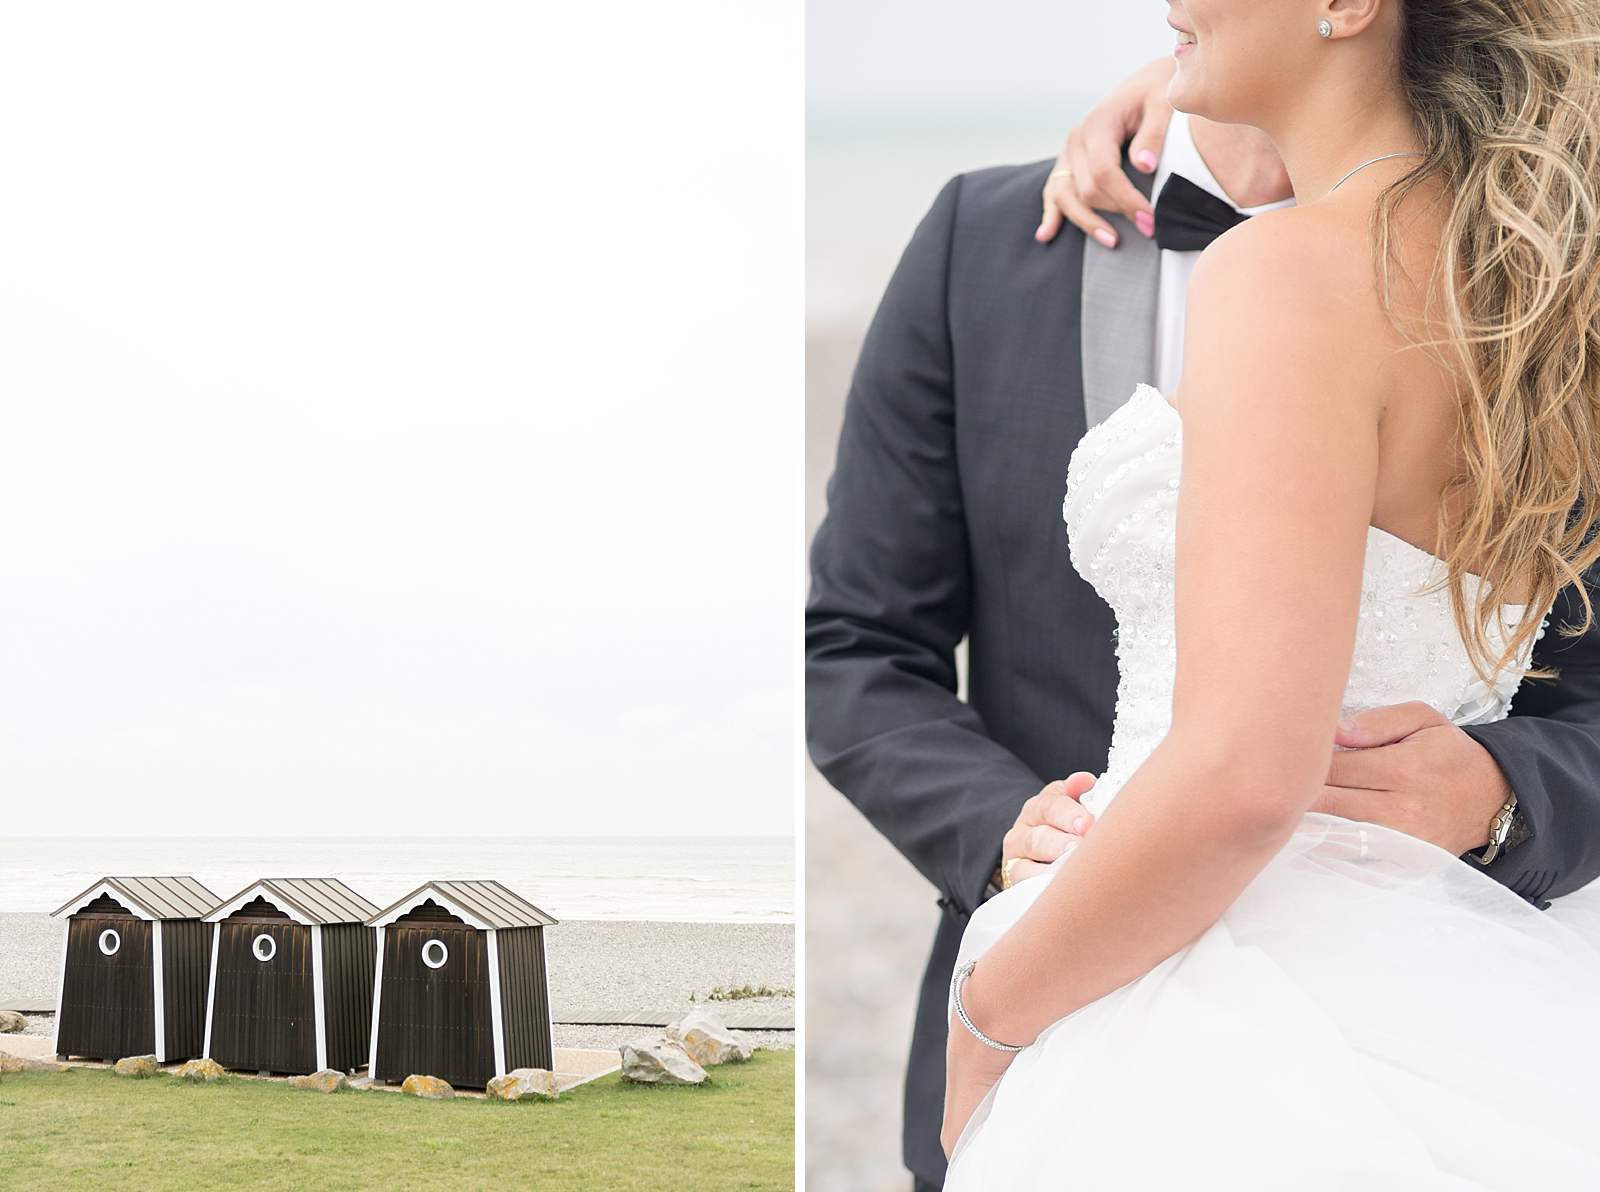 Séance photo de mariage sur la plage de varengeville-sur-mer. Vue des cabine en bois au bord des galets.